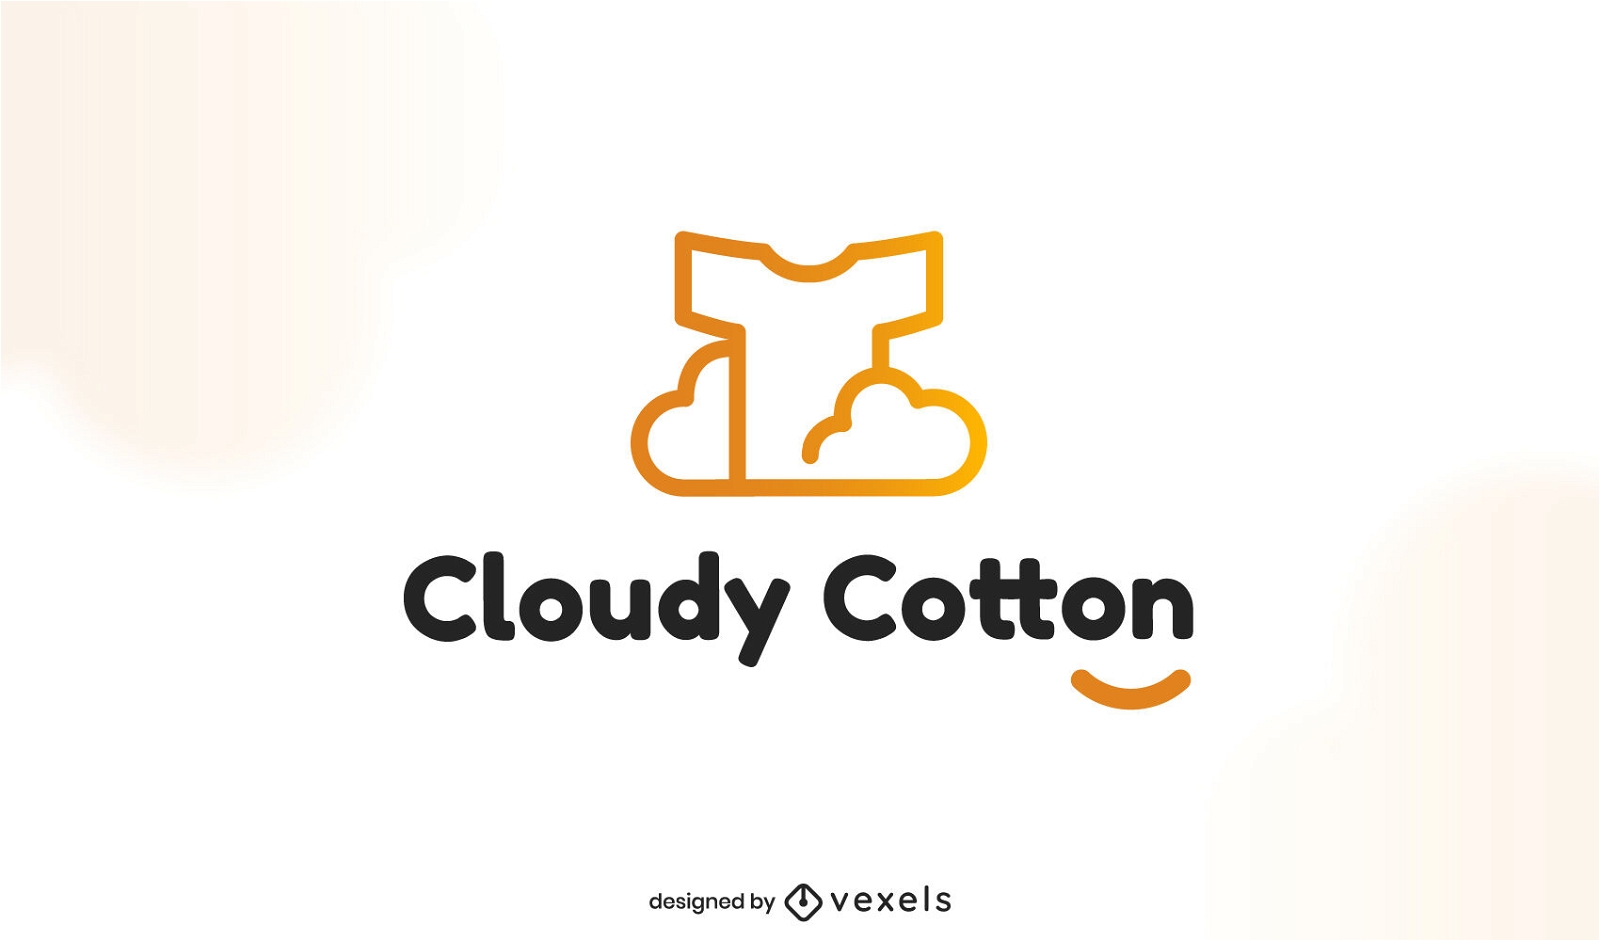 Modelo de logotipo para camisetas nas nuvens